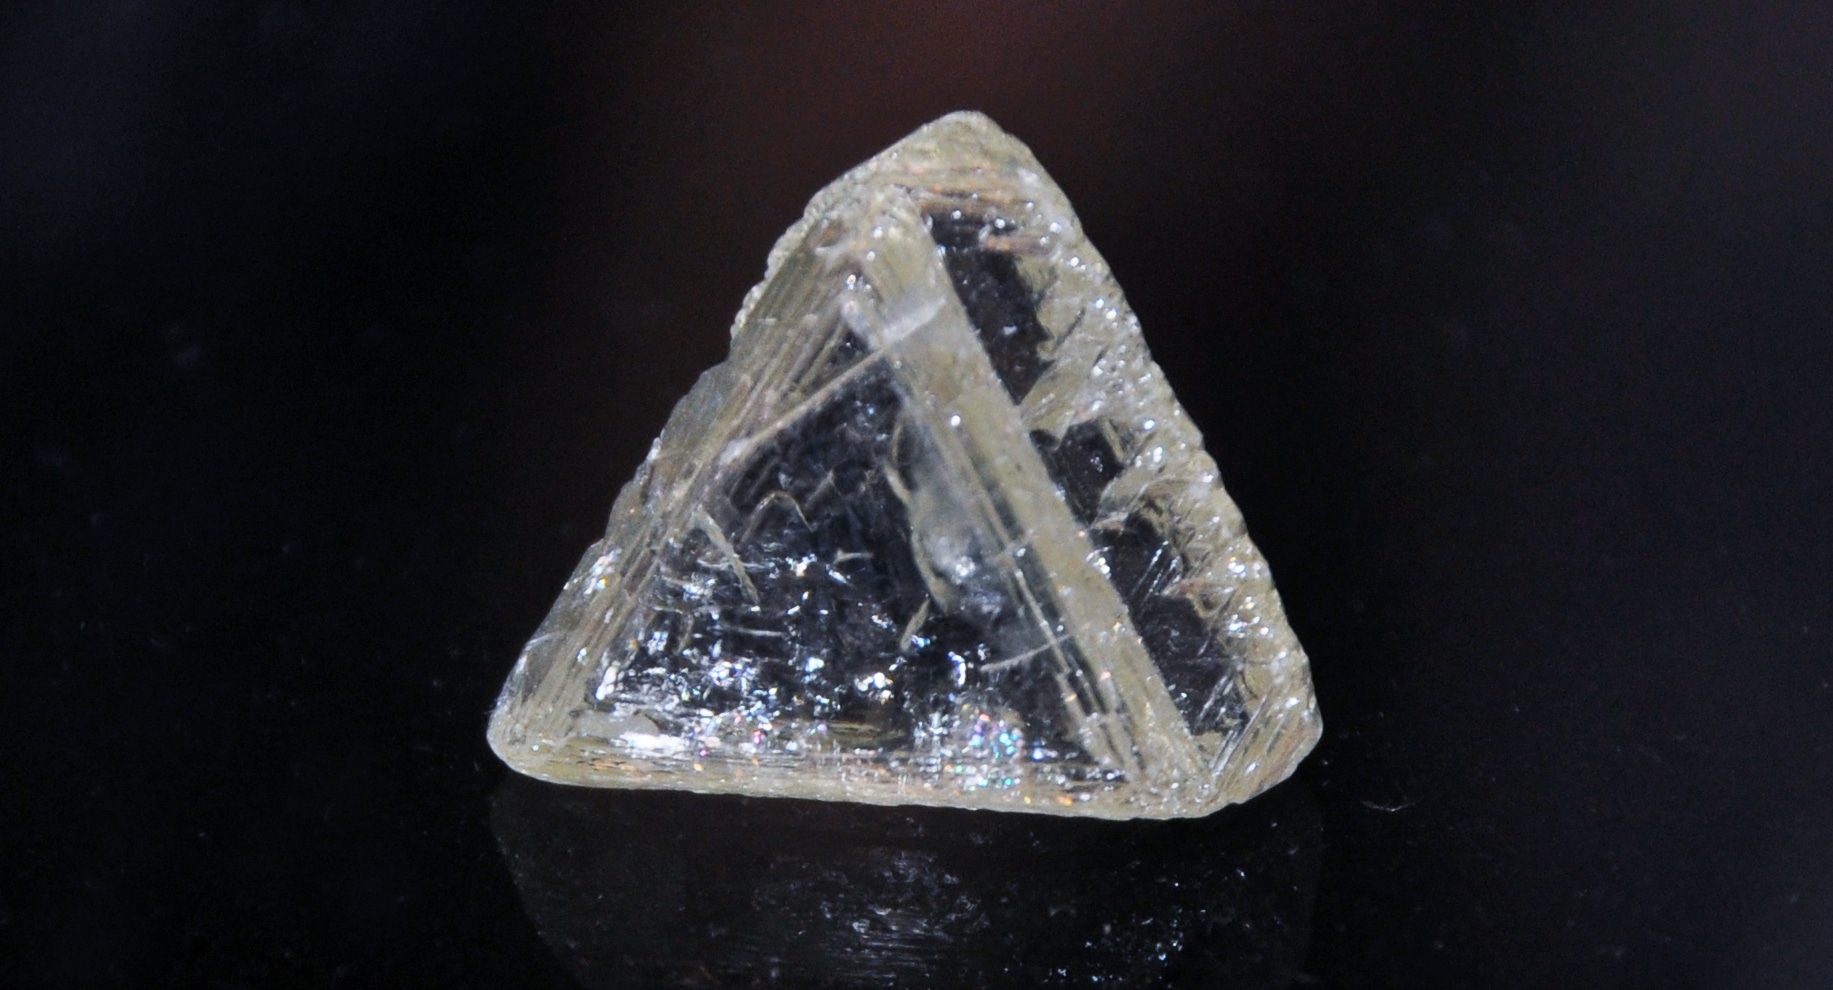 Ученые подобрали «плоский» алмаз для плоских экранов